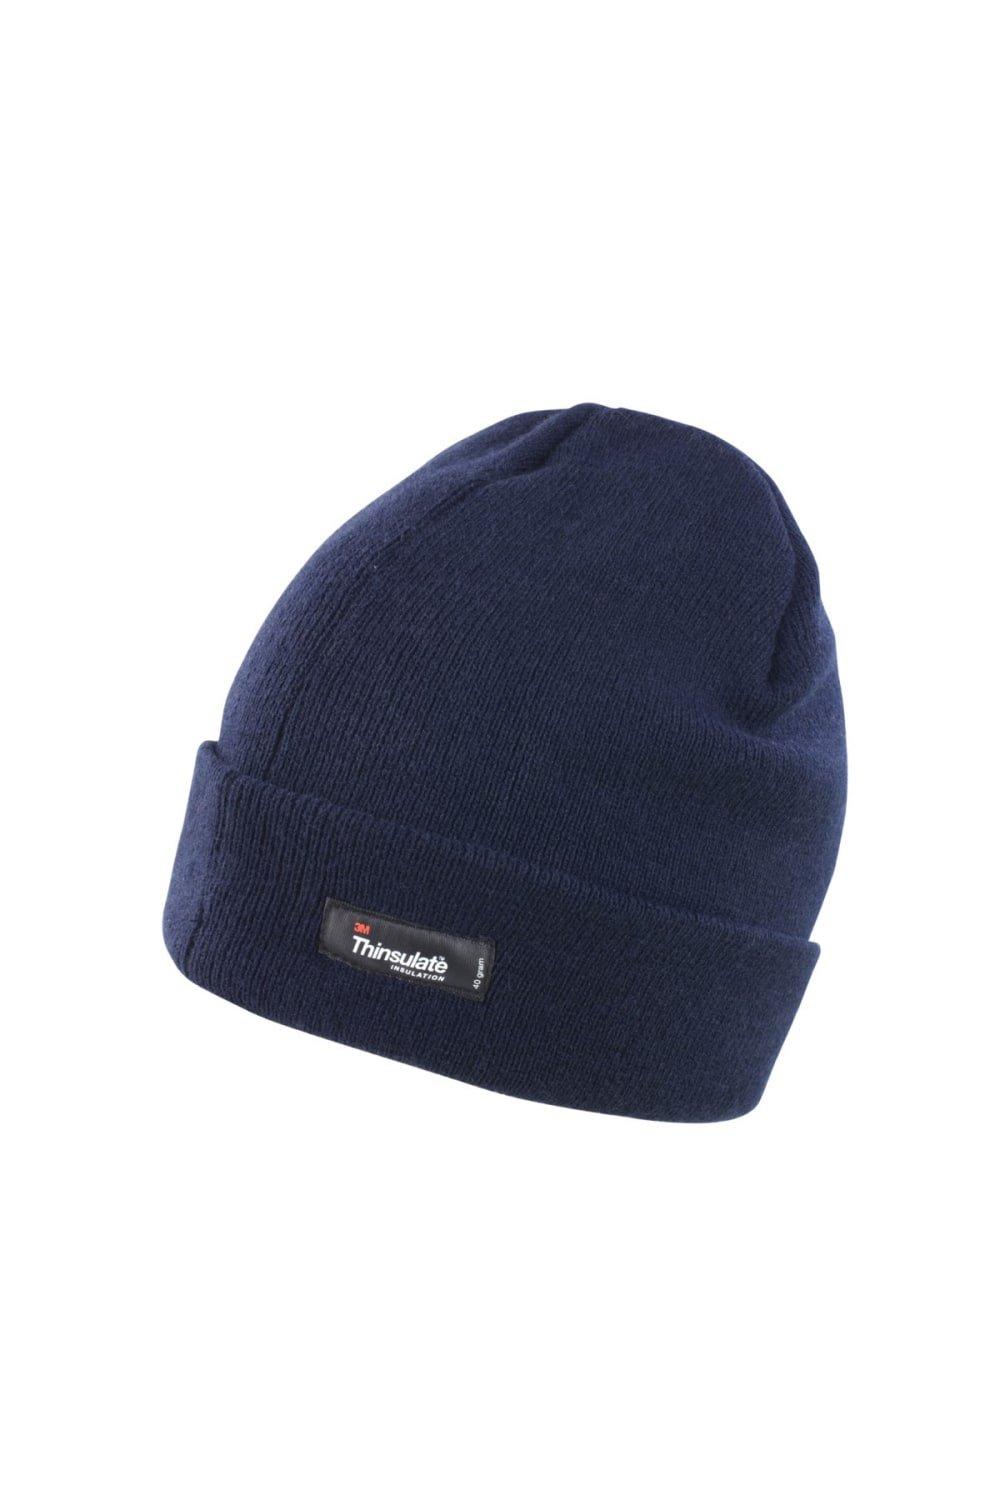 Легкая термозимняя шапка Thinsulate (3M, 40 г) Result, темно-синий